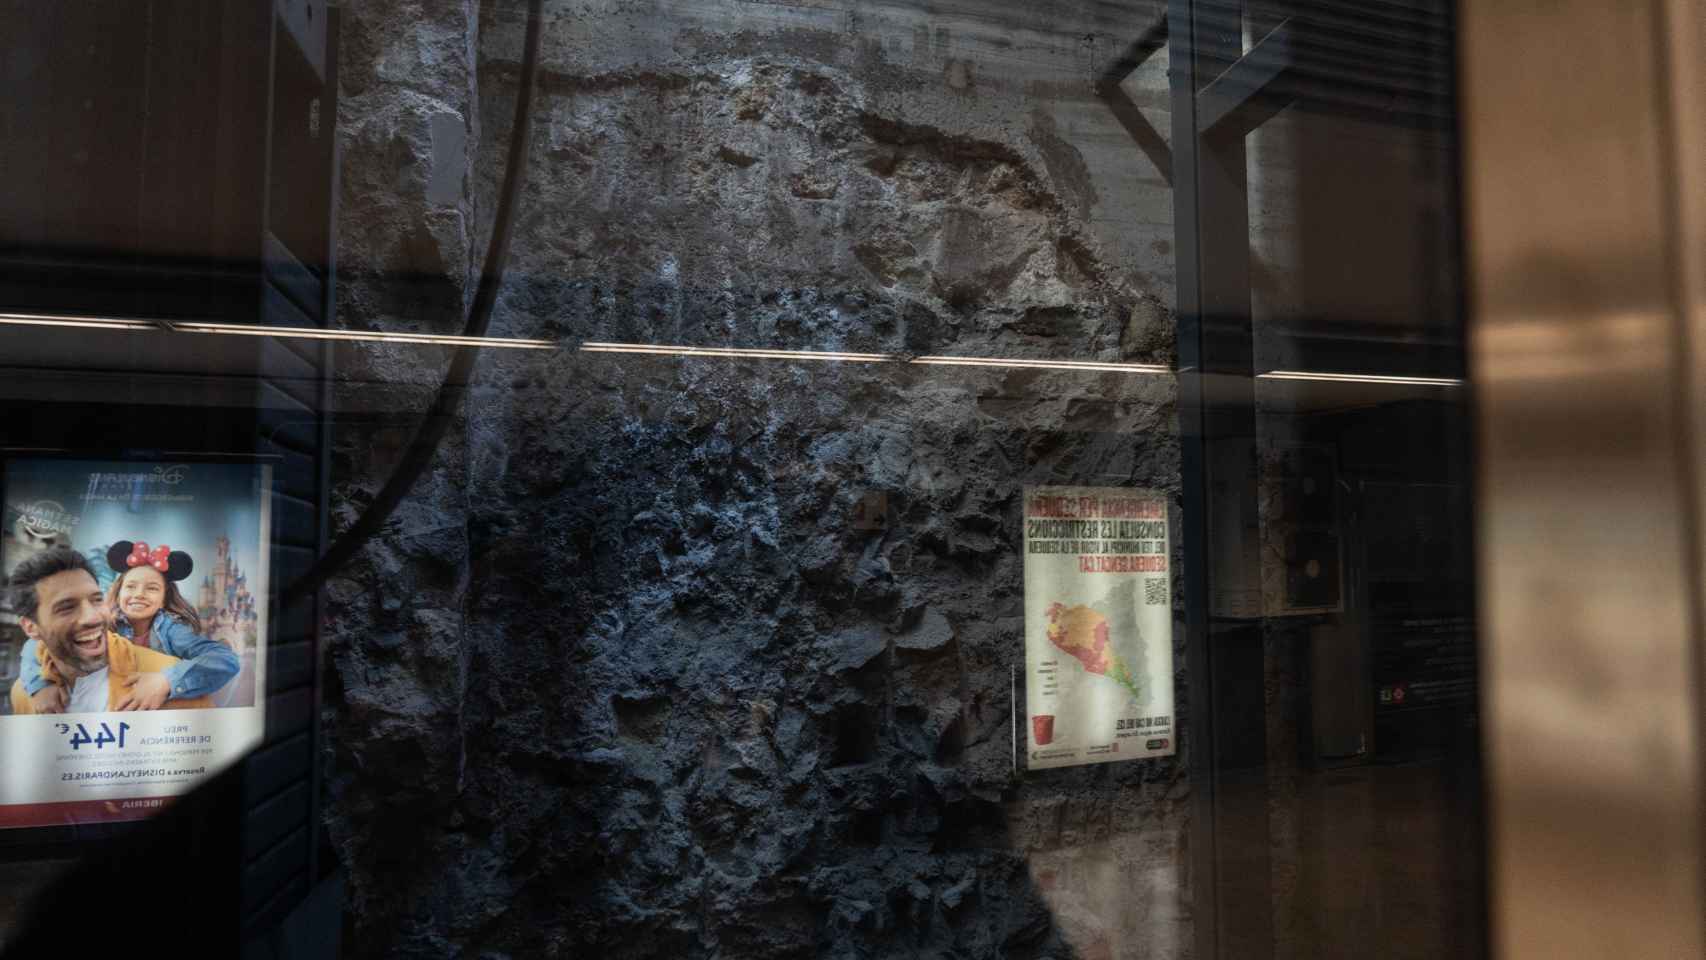 La muralla oculta en el metro de Barcelona